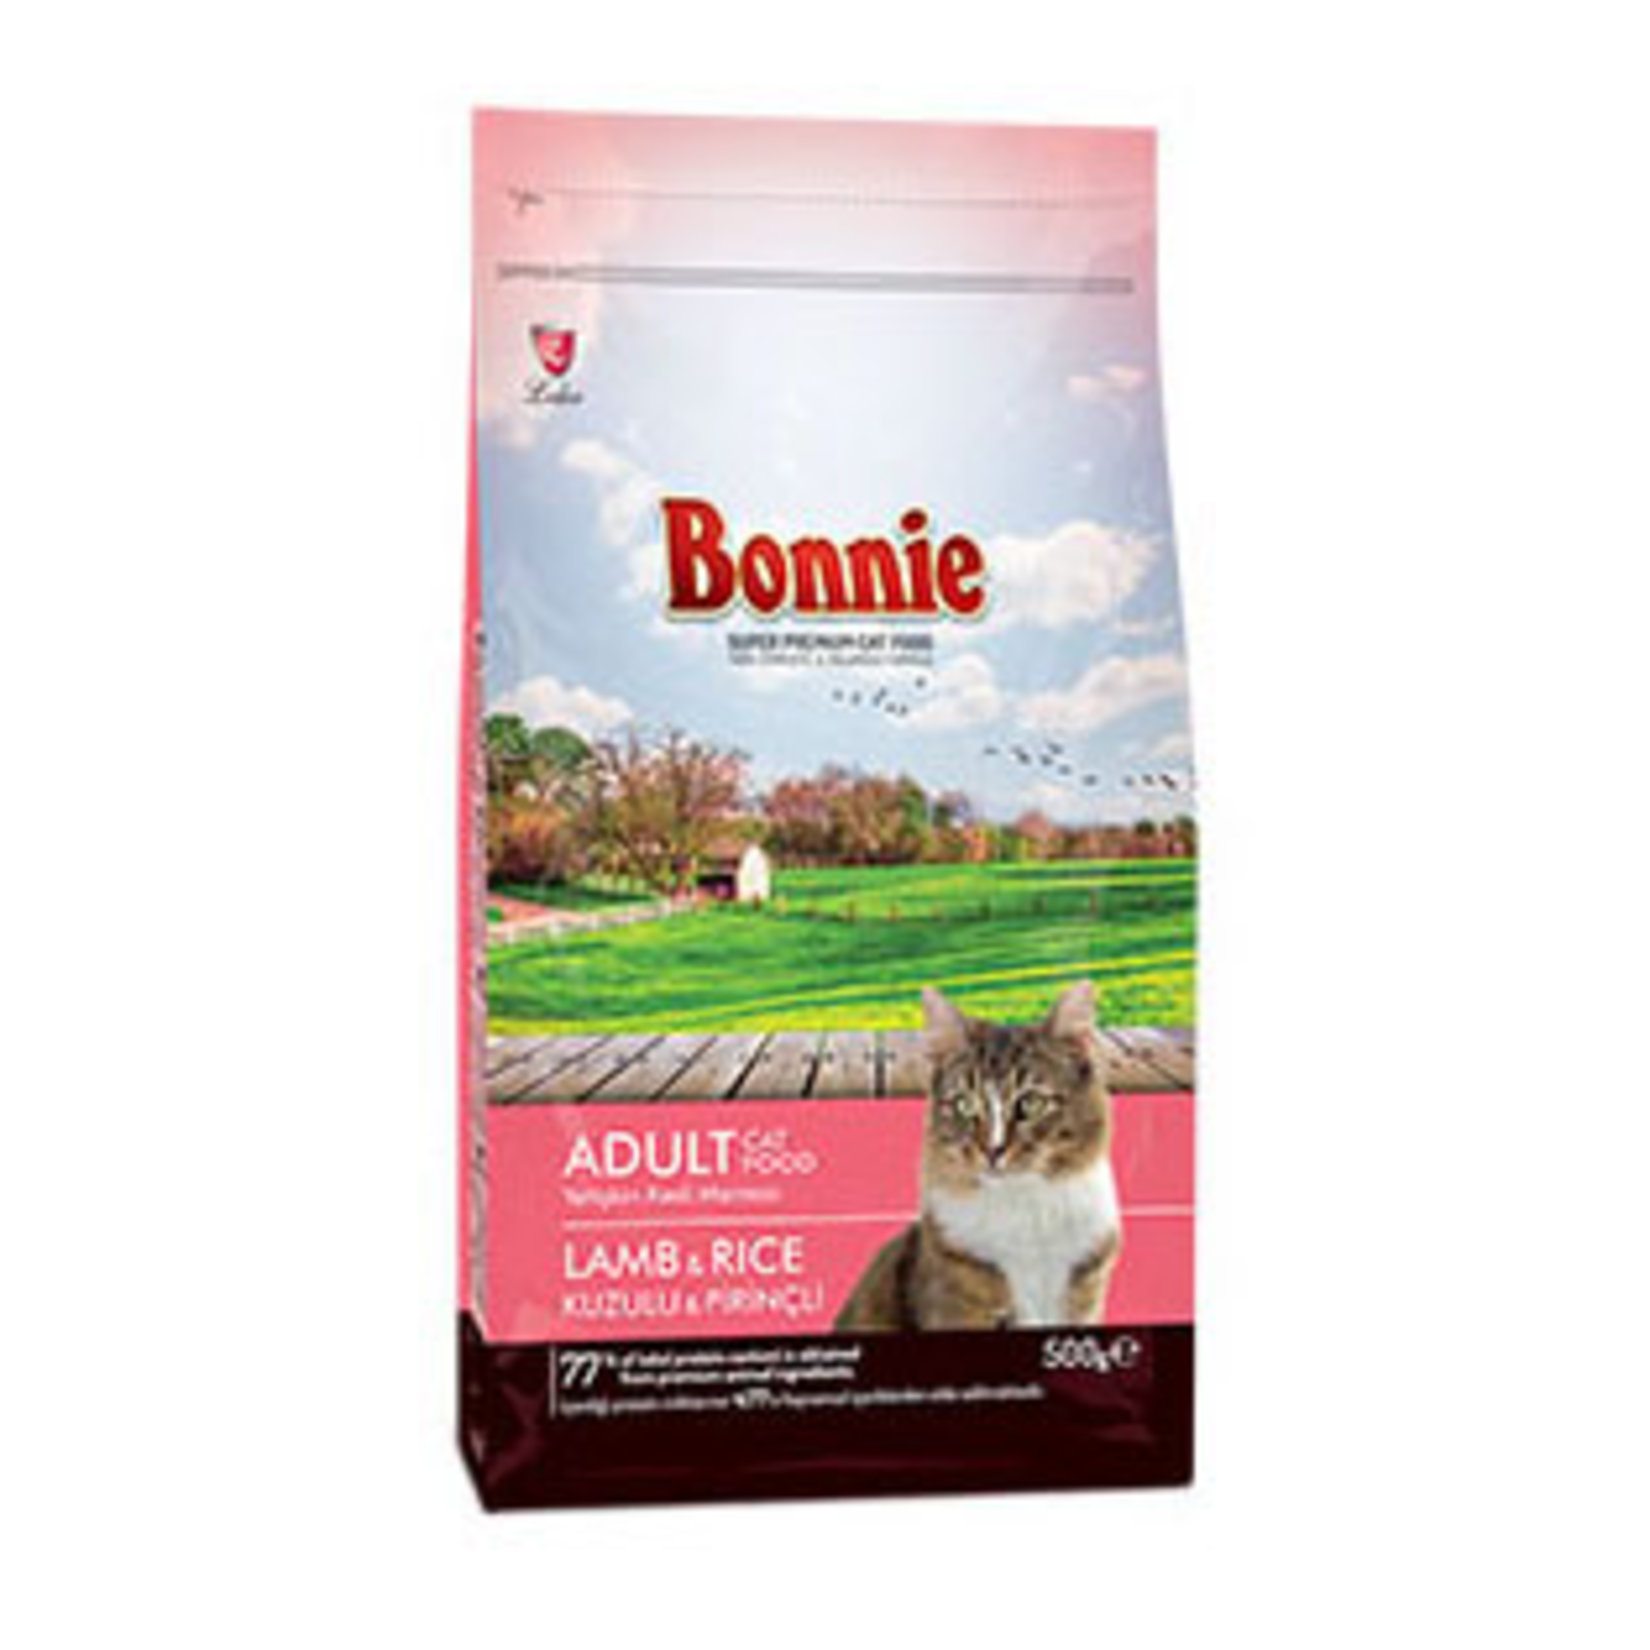 Bonnie Natural Premium Adult Kuru Kedi Maması 500 G Marka Bonnie Sempati